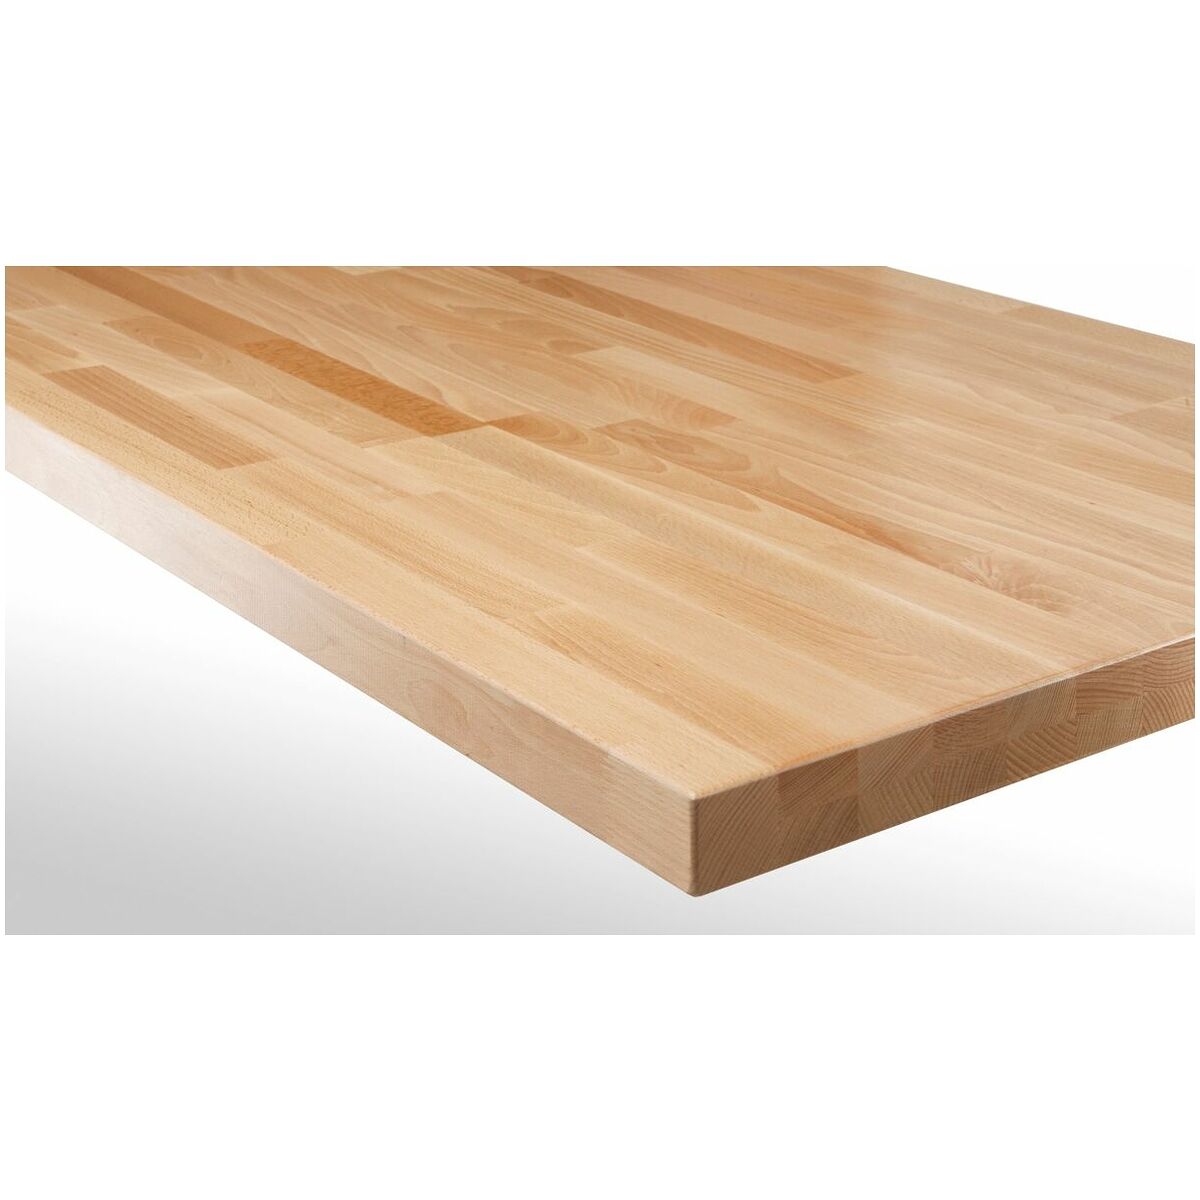 Simply buy Worktop | Hoffmann of beech Depth mm wood strips Group glued 700